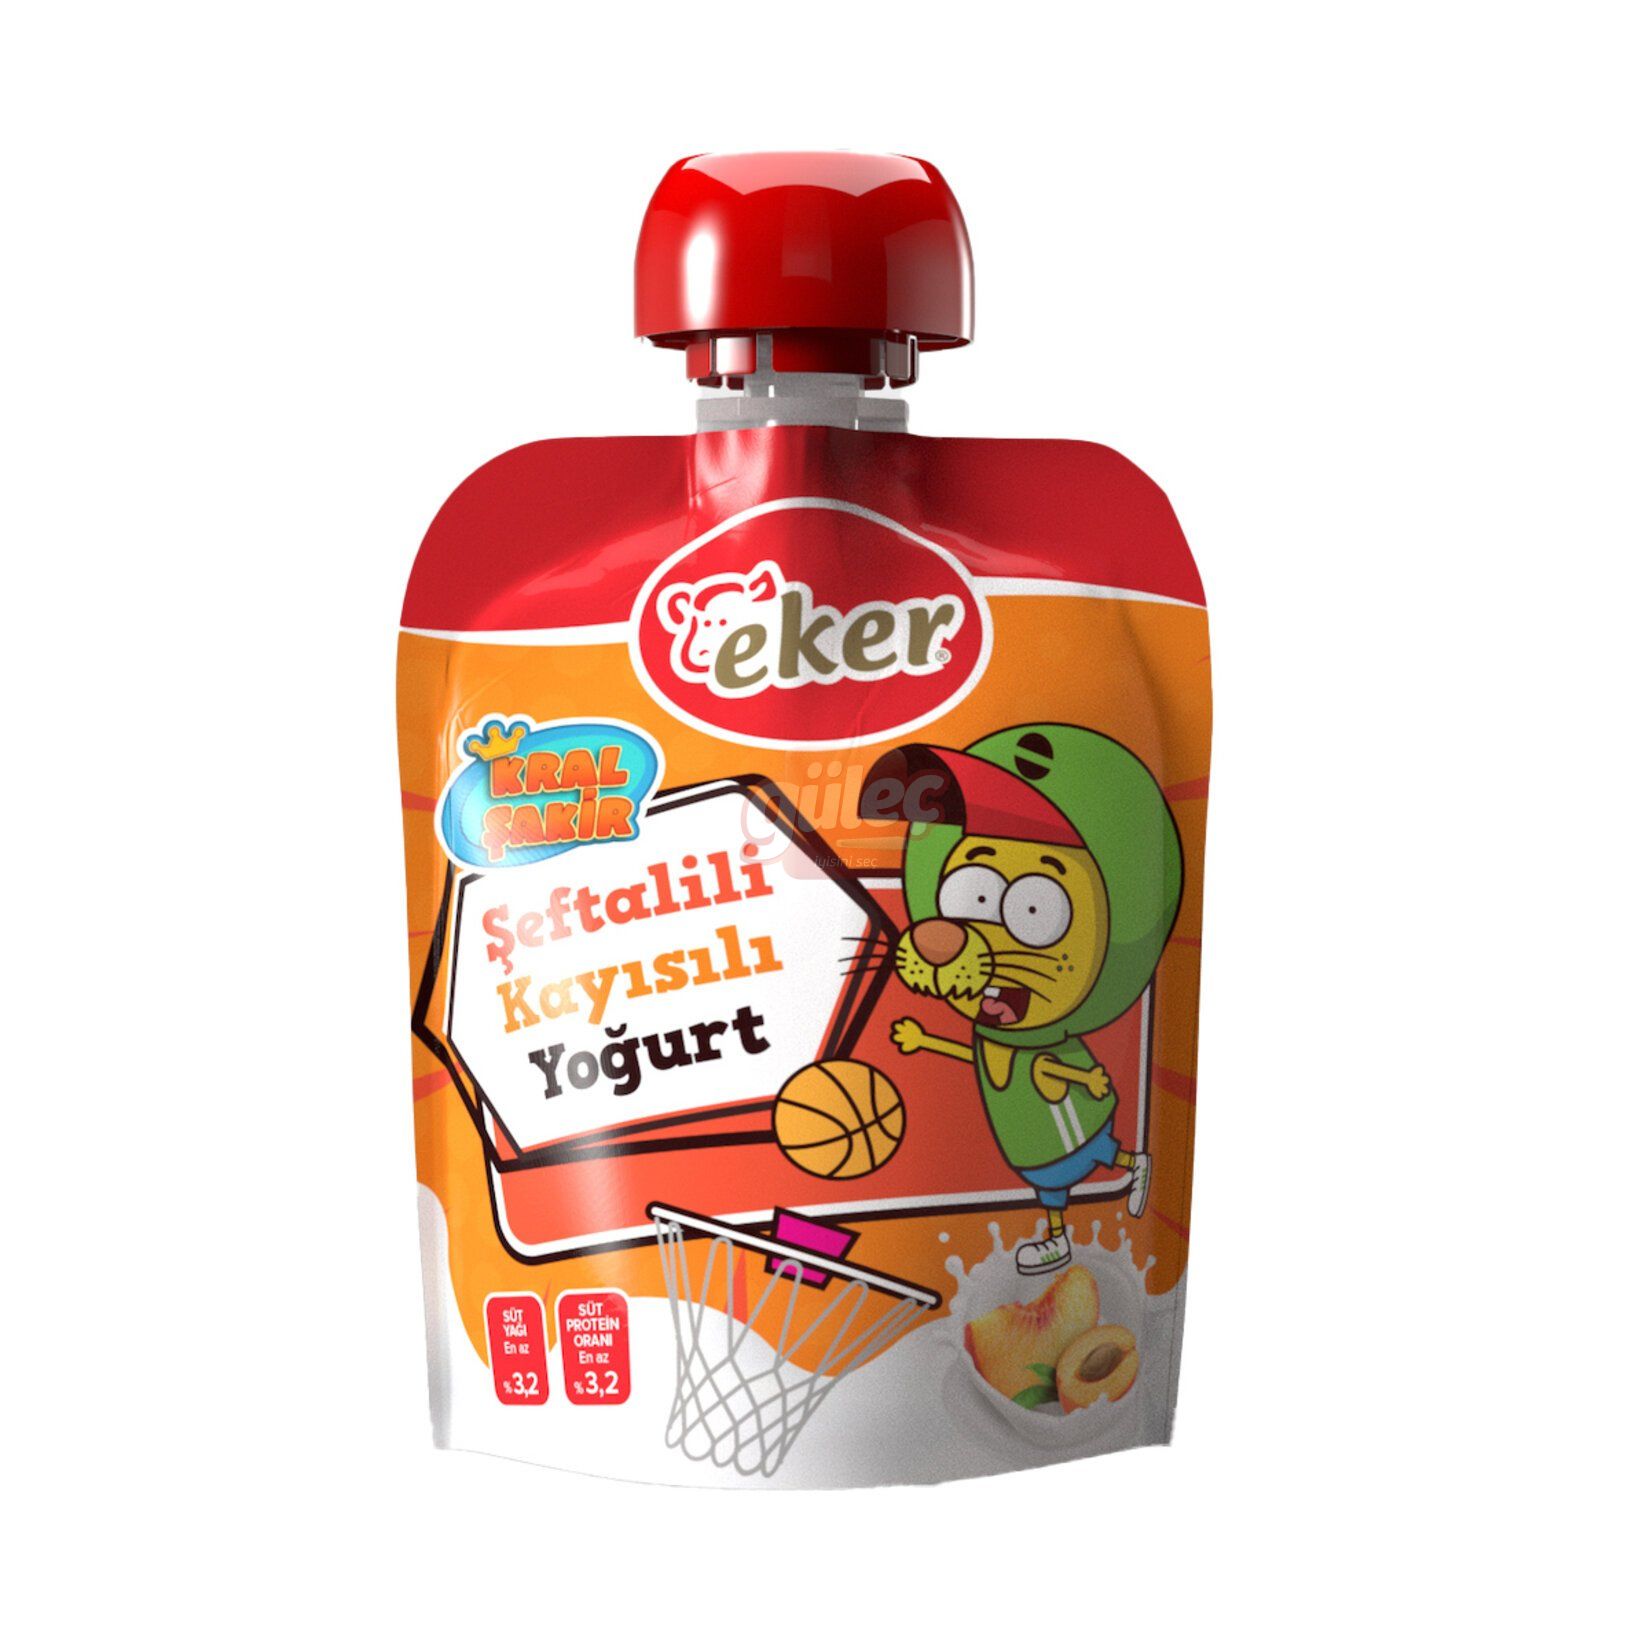 Eker Pouch Şeftali-Kayısılı Yogurt 65 G